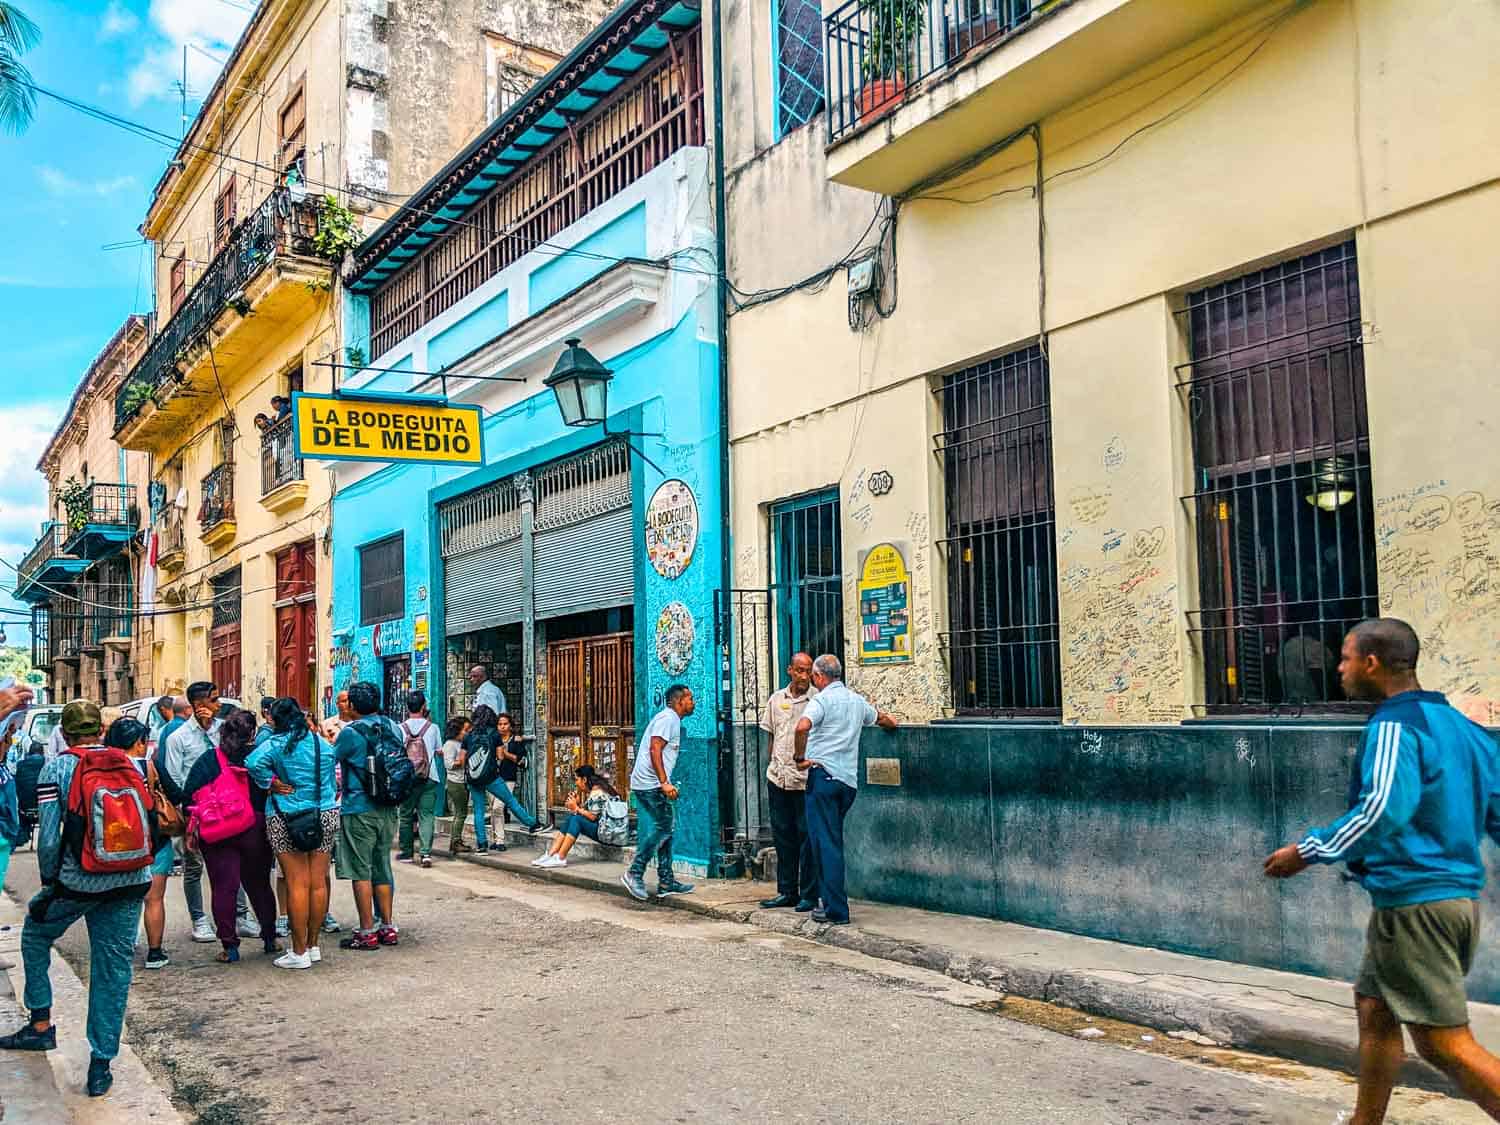 Bodeguita del Medio in Havana in Havana is one of the tourist spots for Hemingway in Cuba.